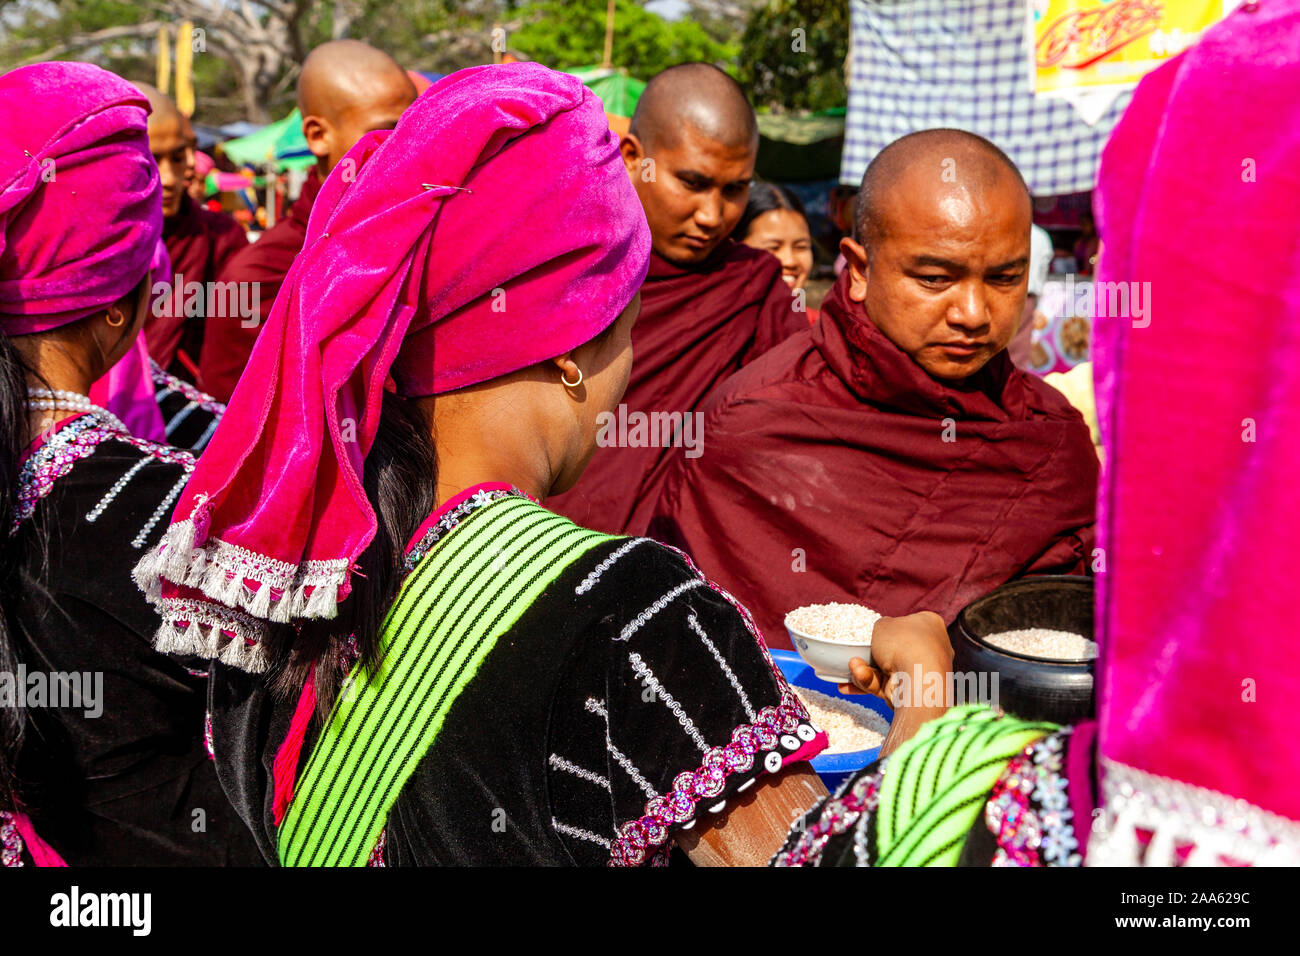 Eine Gruppe junger Frauen, die ethnischen Minderheiten angehören, Almosen/Spenden an lokale Buddhistische Mönche Im Pindaya Cave Festival, Pindaya, Shan Staat, Myanmar. Stockfoto